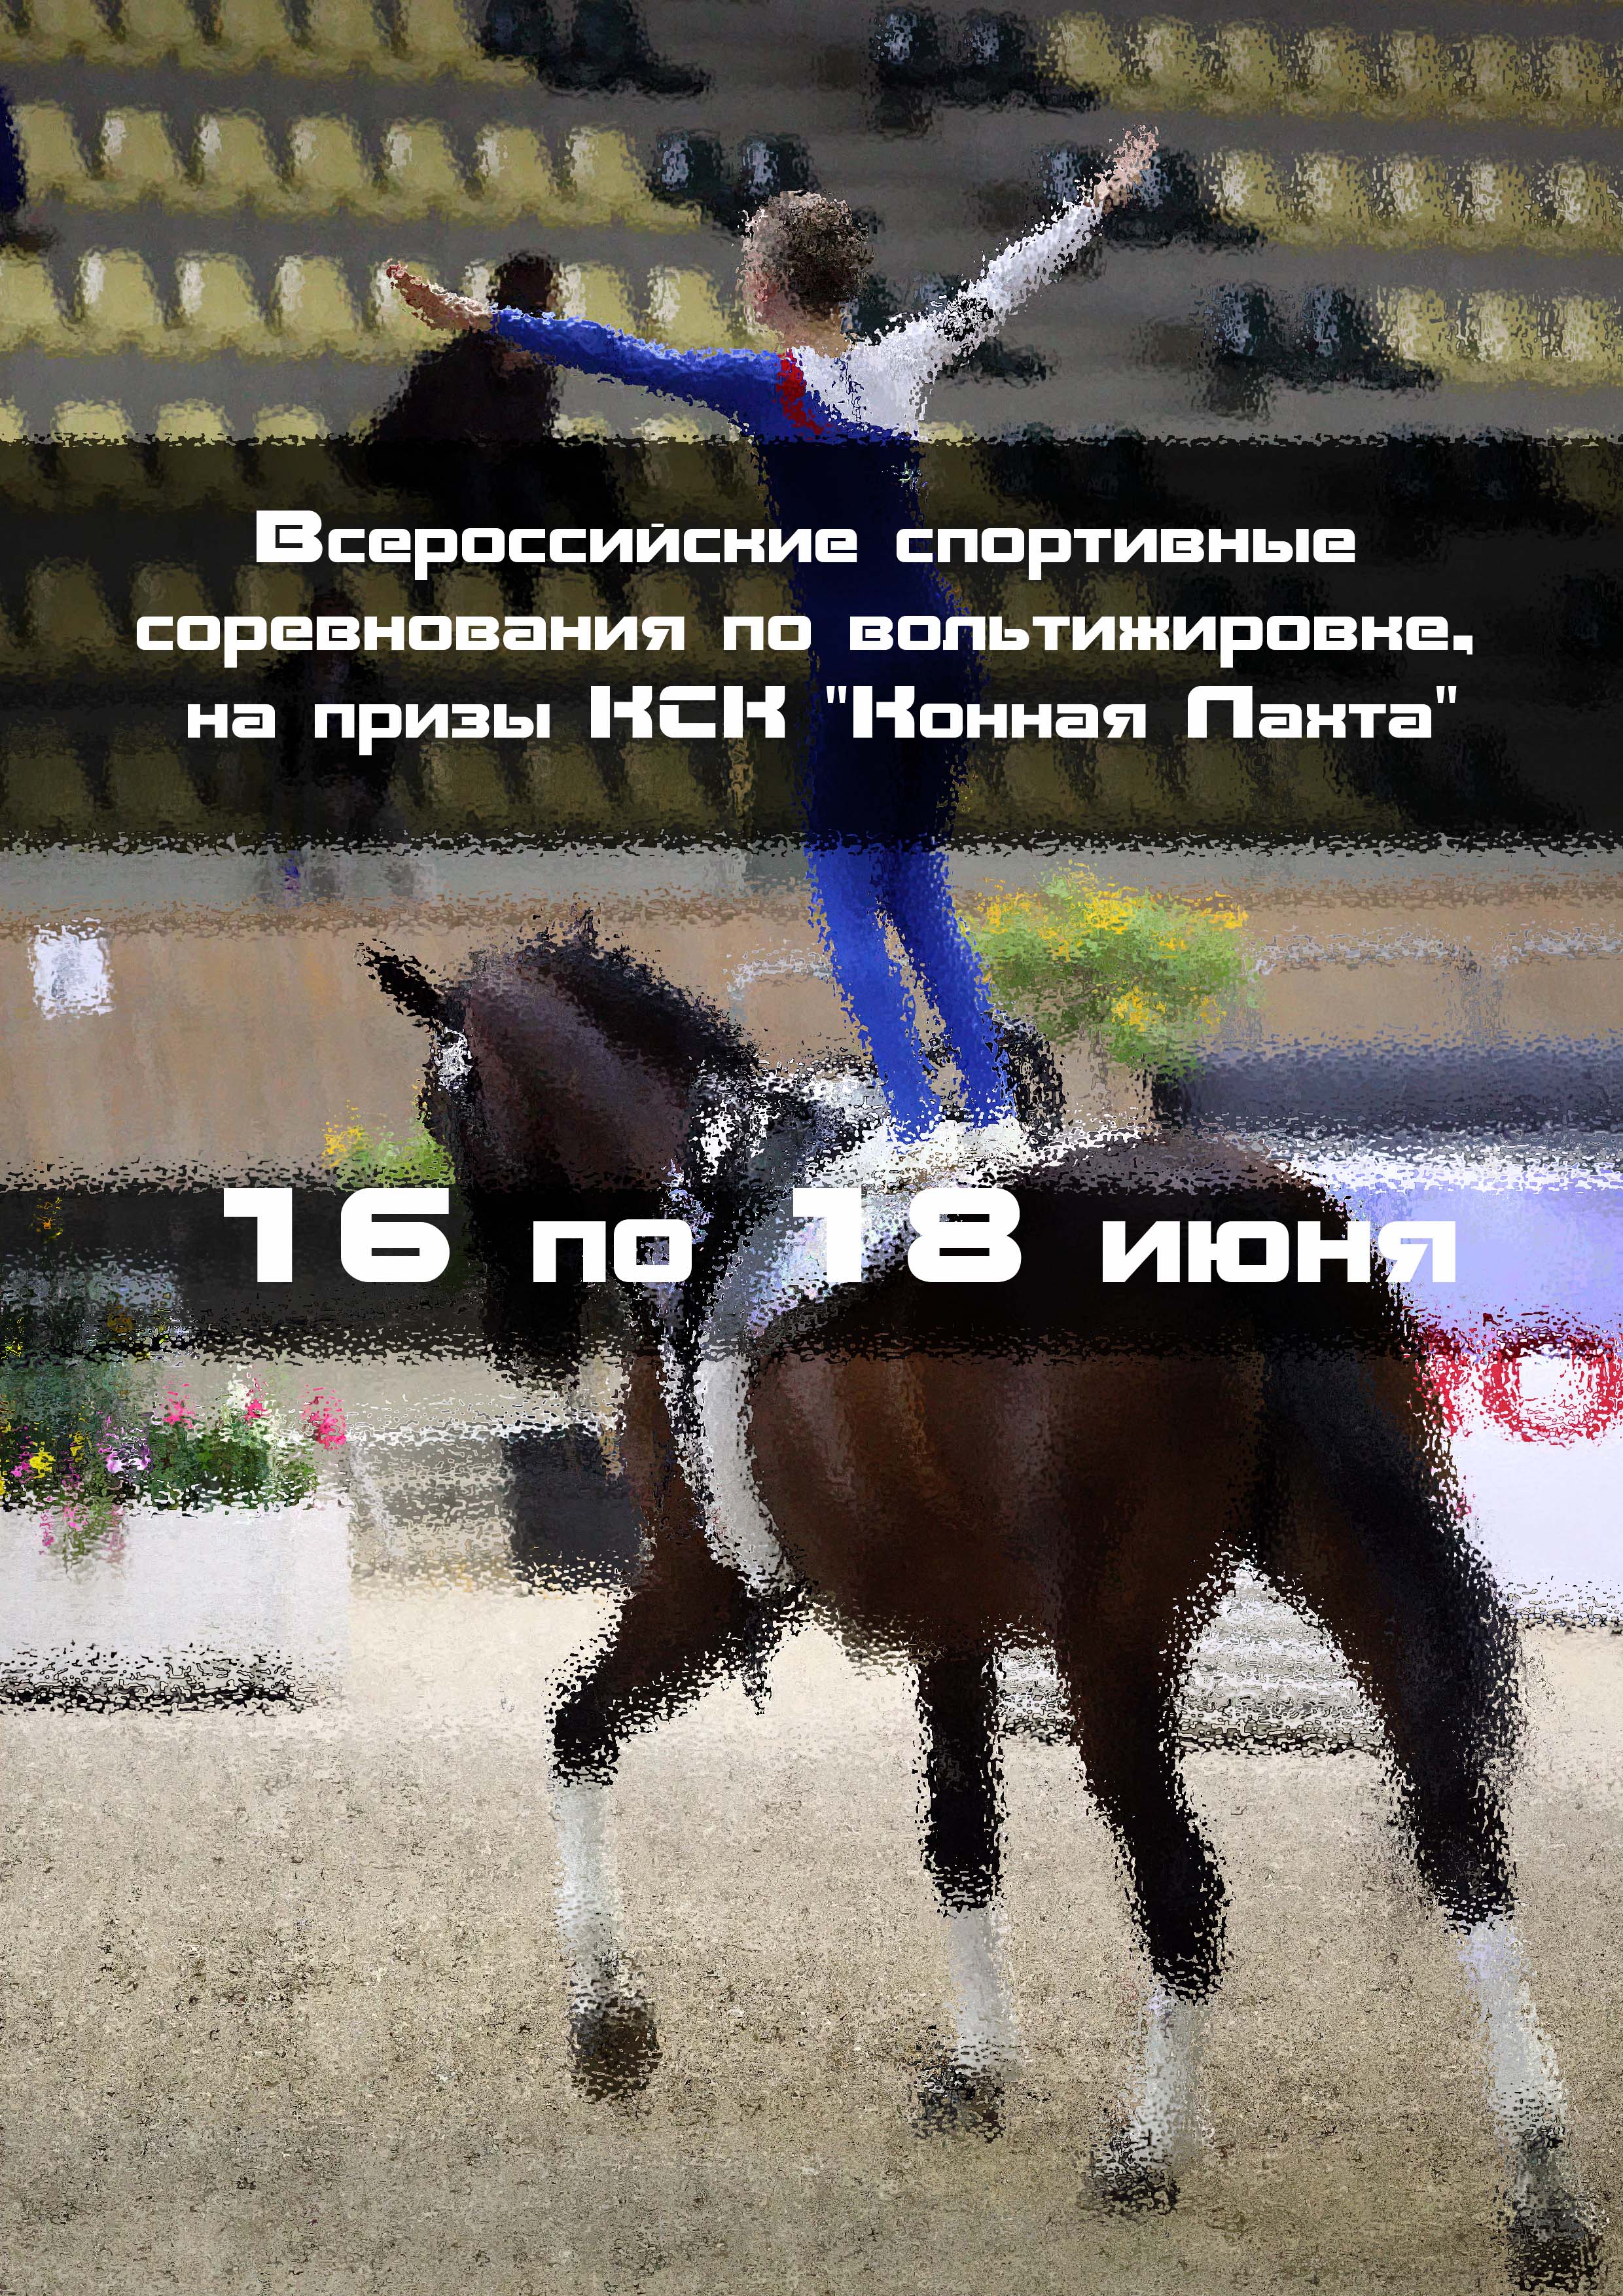 Всероссийские спортивные соревнования по вольтижировке, на призы КСК "Конная Лахта" 16  ג  ון
 2023  שנה
 